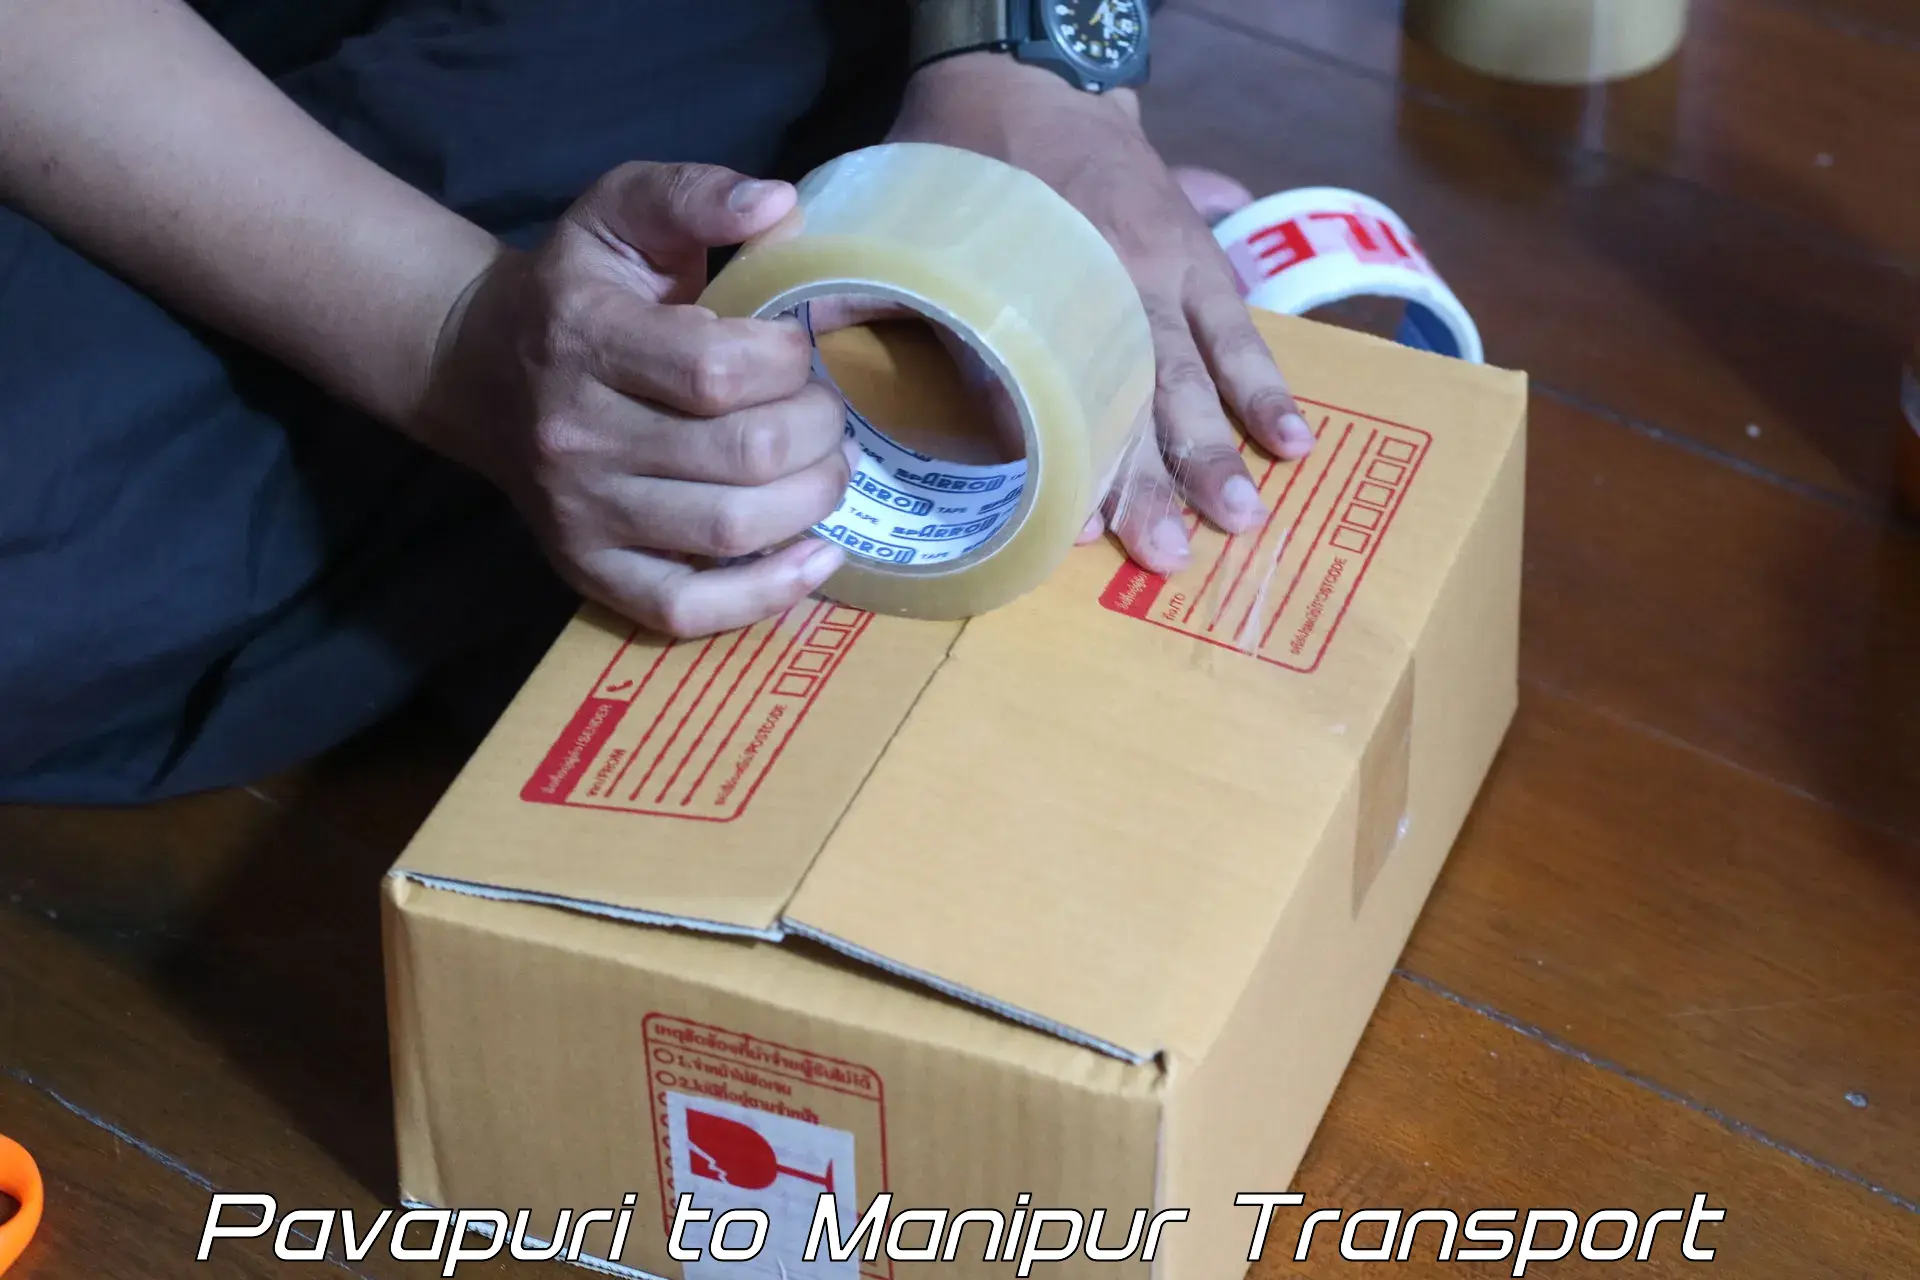 Furniture transport service Pavapuri to NIT Manipur